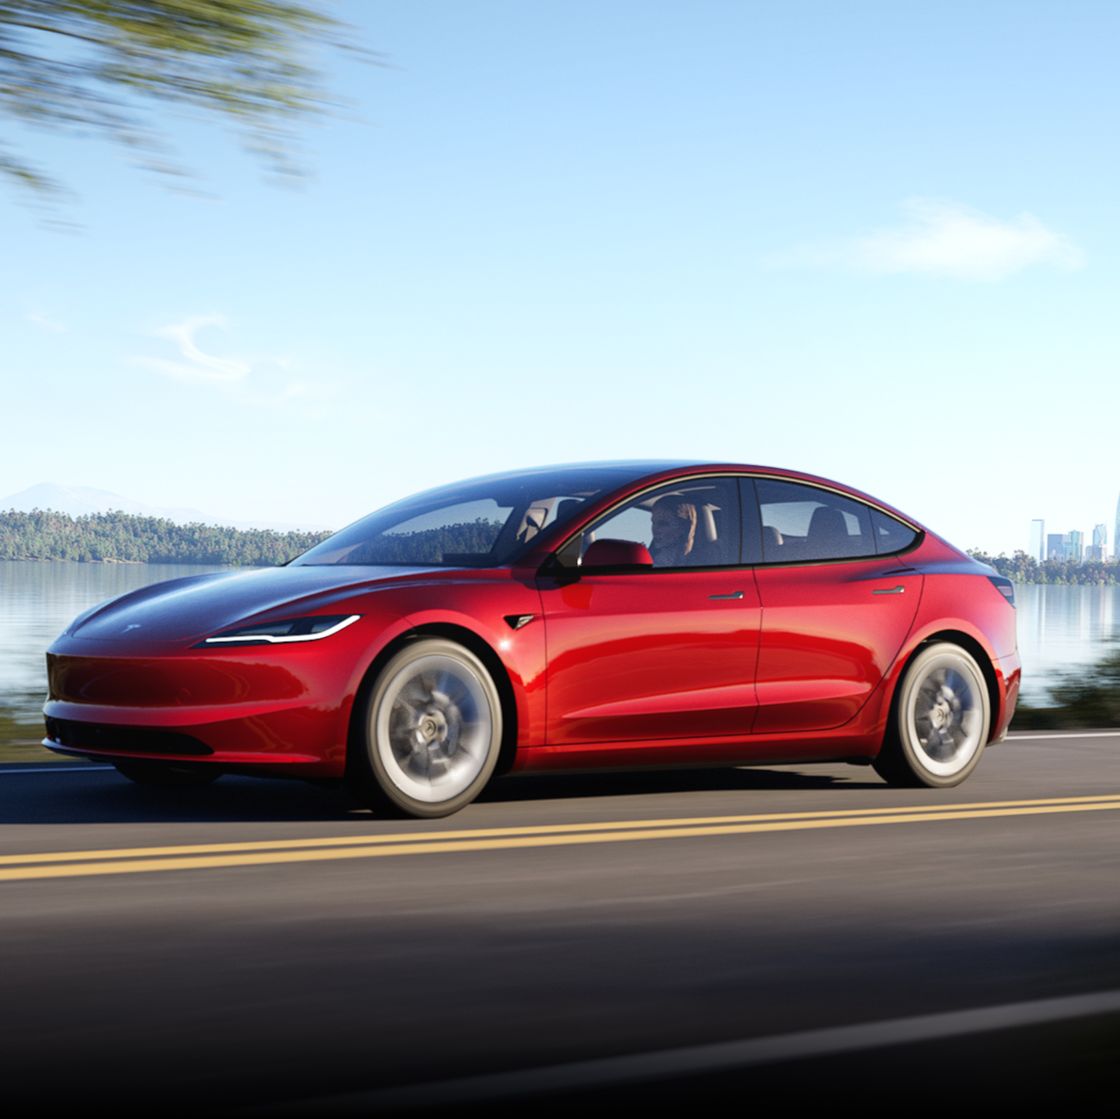 Tesla เปิดตัว Model 3 Minorchange ปรับดีไซน์ใหม่ ดูโฉบเฉี่ยวและขับได้ไกลขึ้น